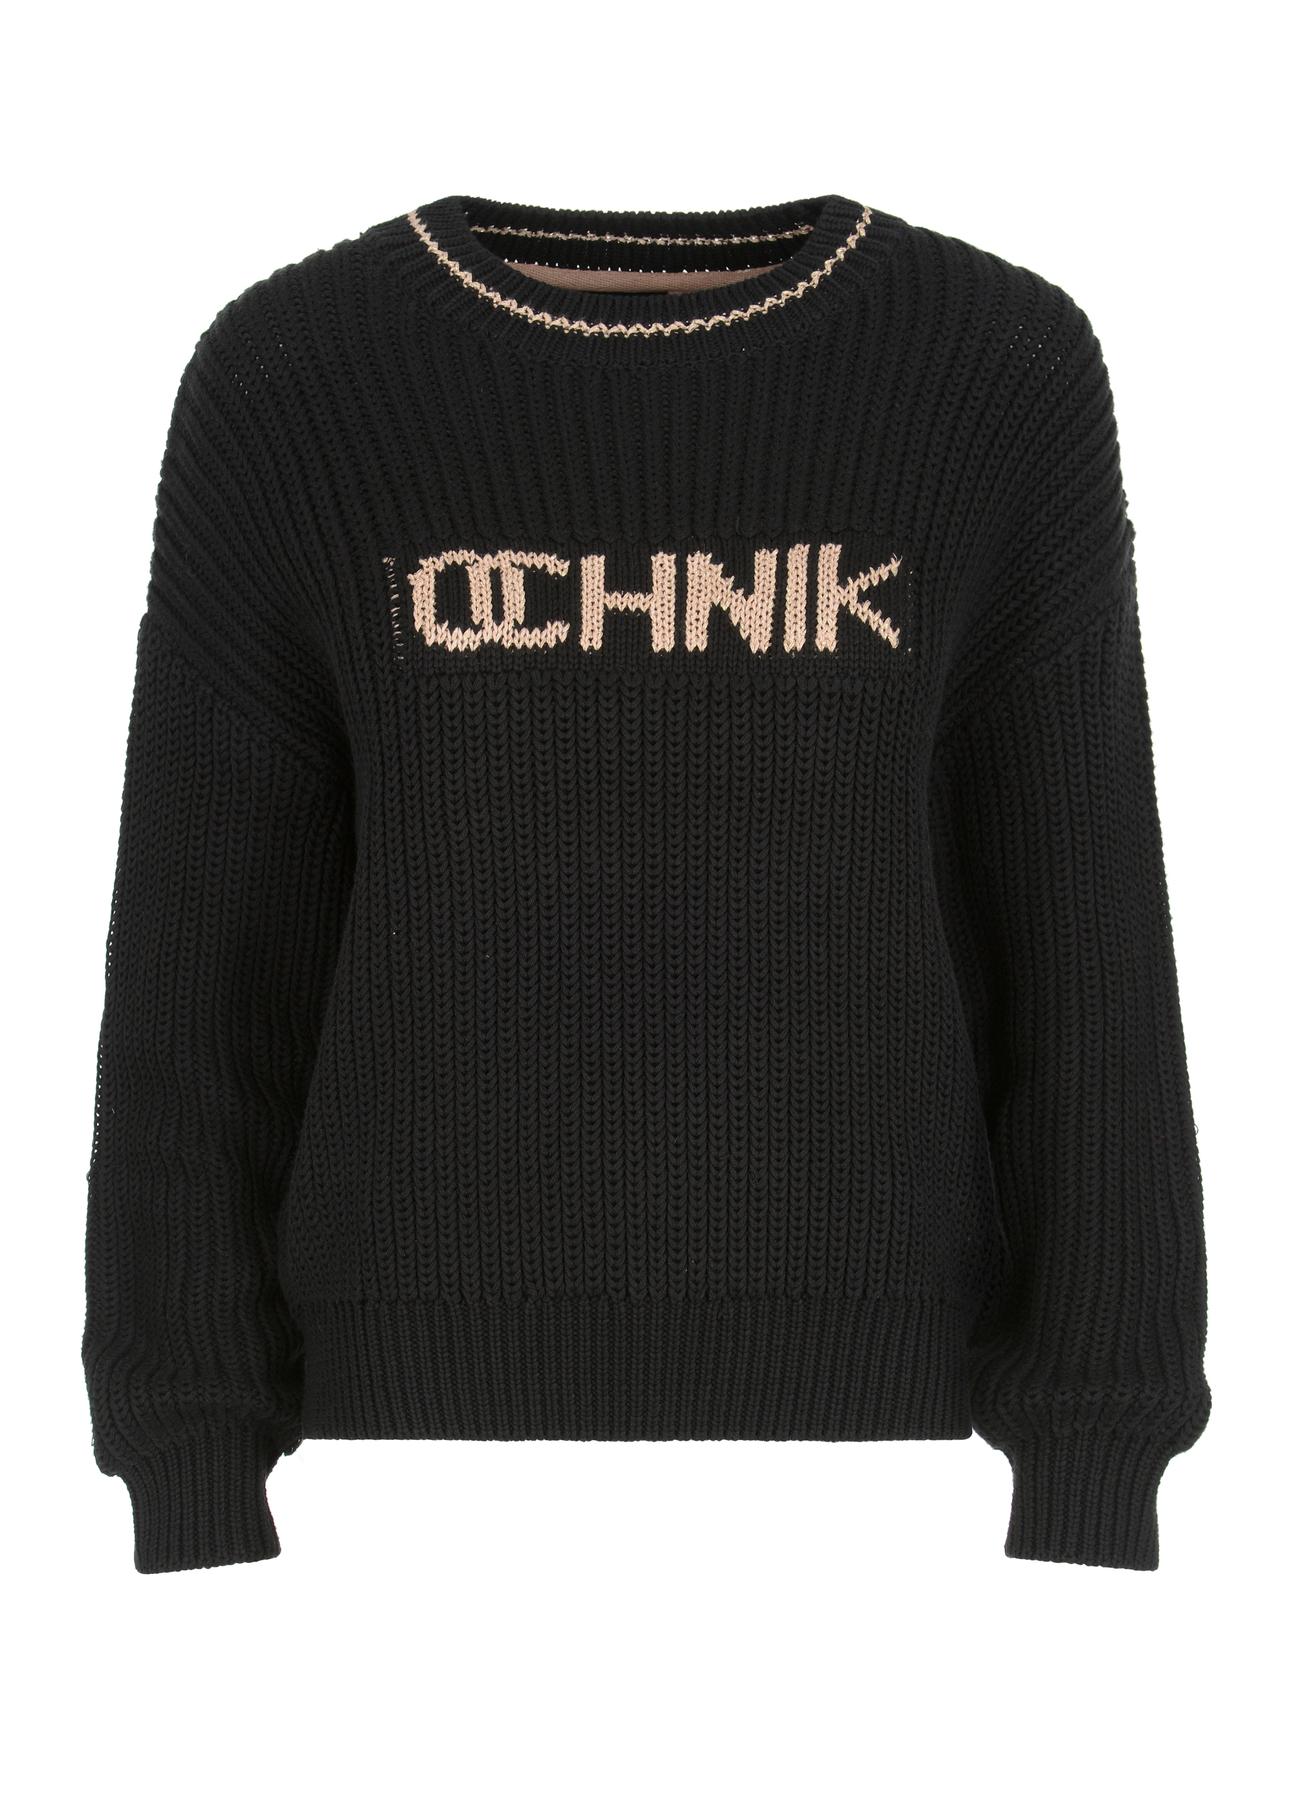 Czarny sweter damski z logo OCHNIK SWEDT-0163-99(Z22)